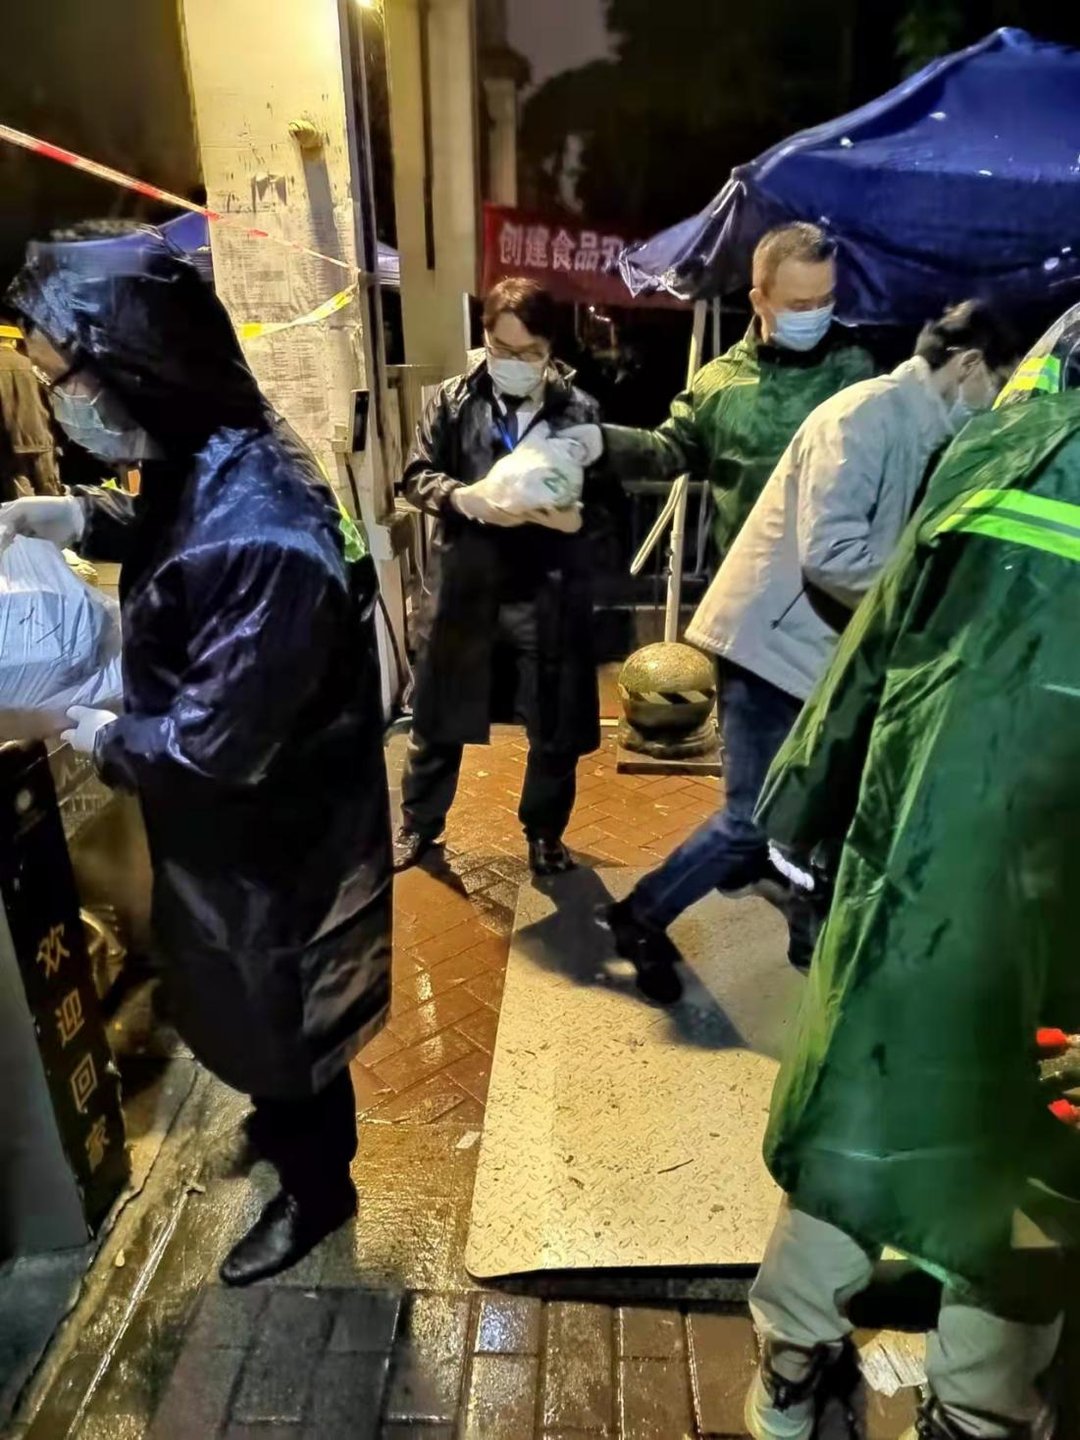 配送|暖心一幕！锦江区70多名志愿者冒雨给隔离人家配送生活物资